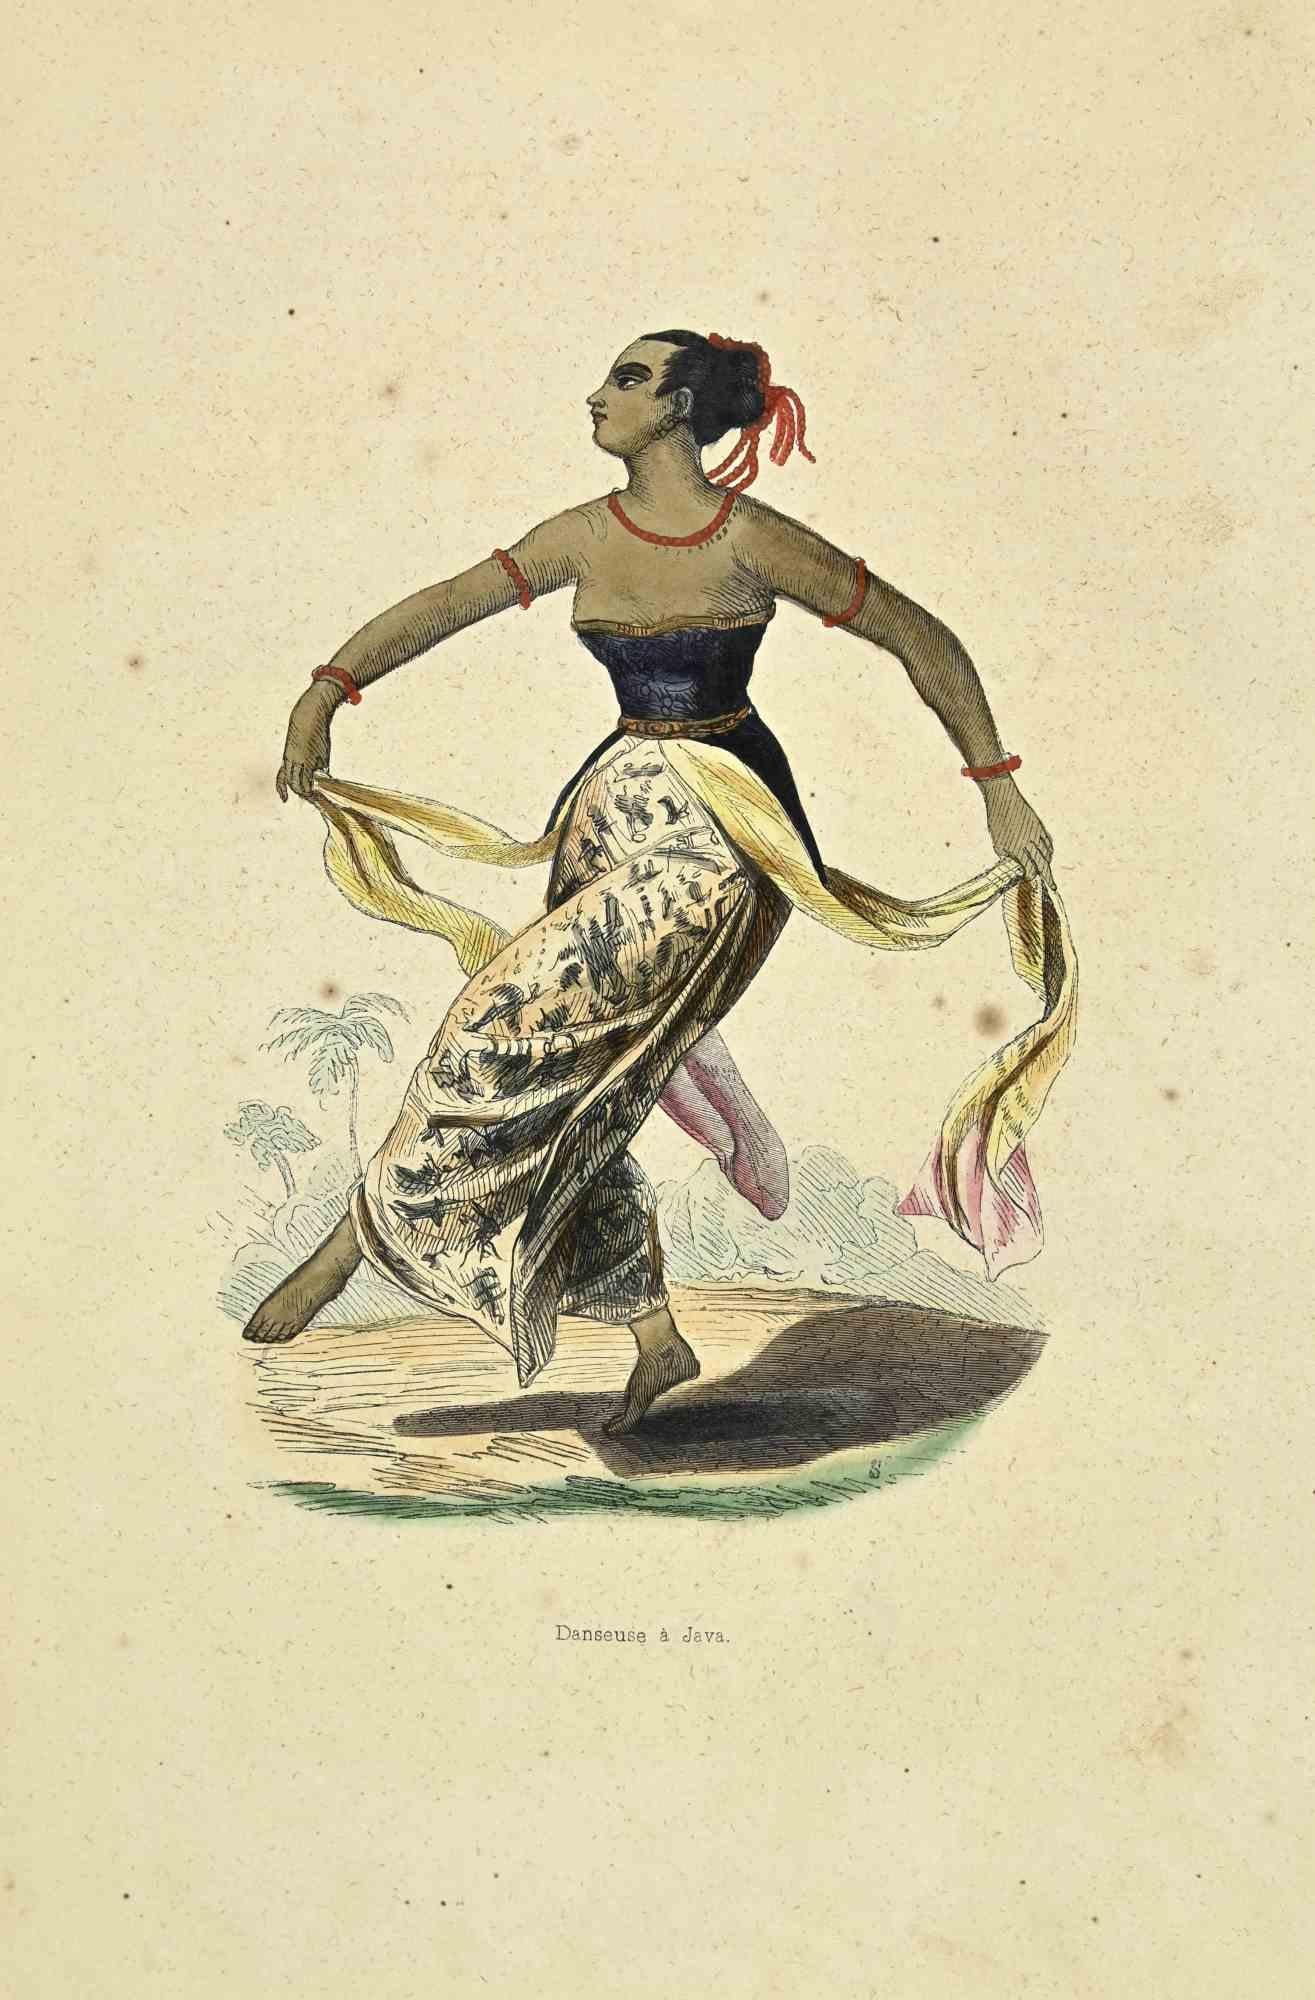 Danseuse a Java - Lithographie d'Auguste Wahlen - 1844